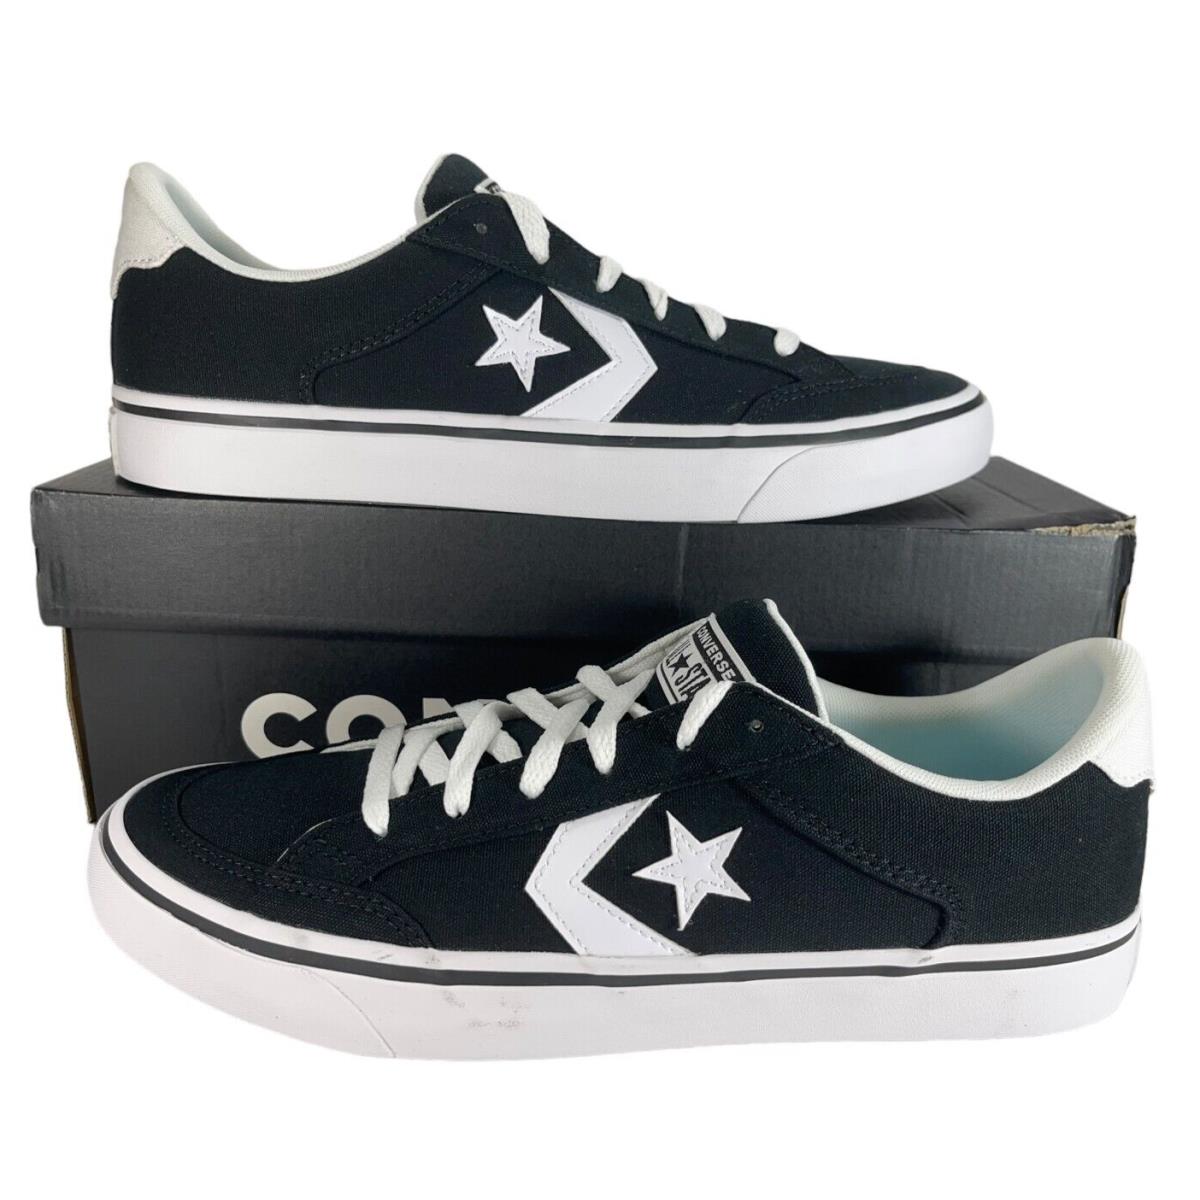 Converse Cons Tobin Ox Black White Sneaker A03686C Men`s Shoe Size 11.5